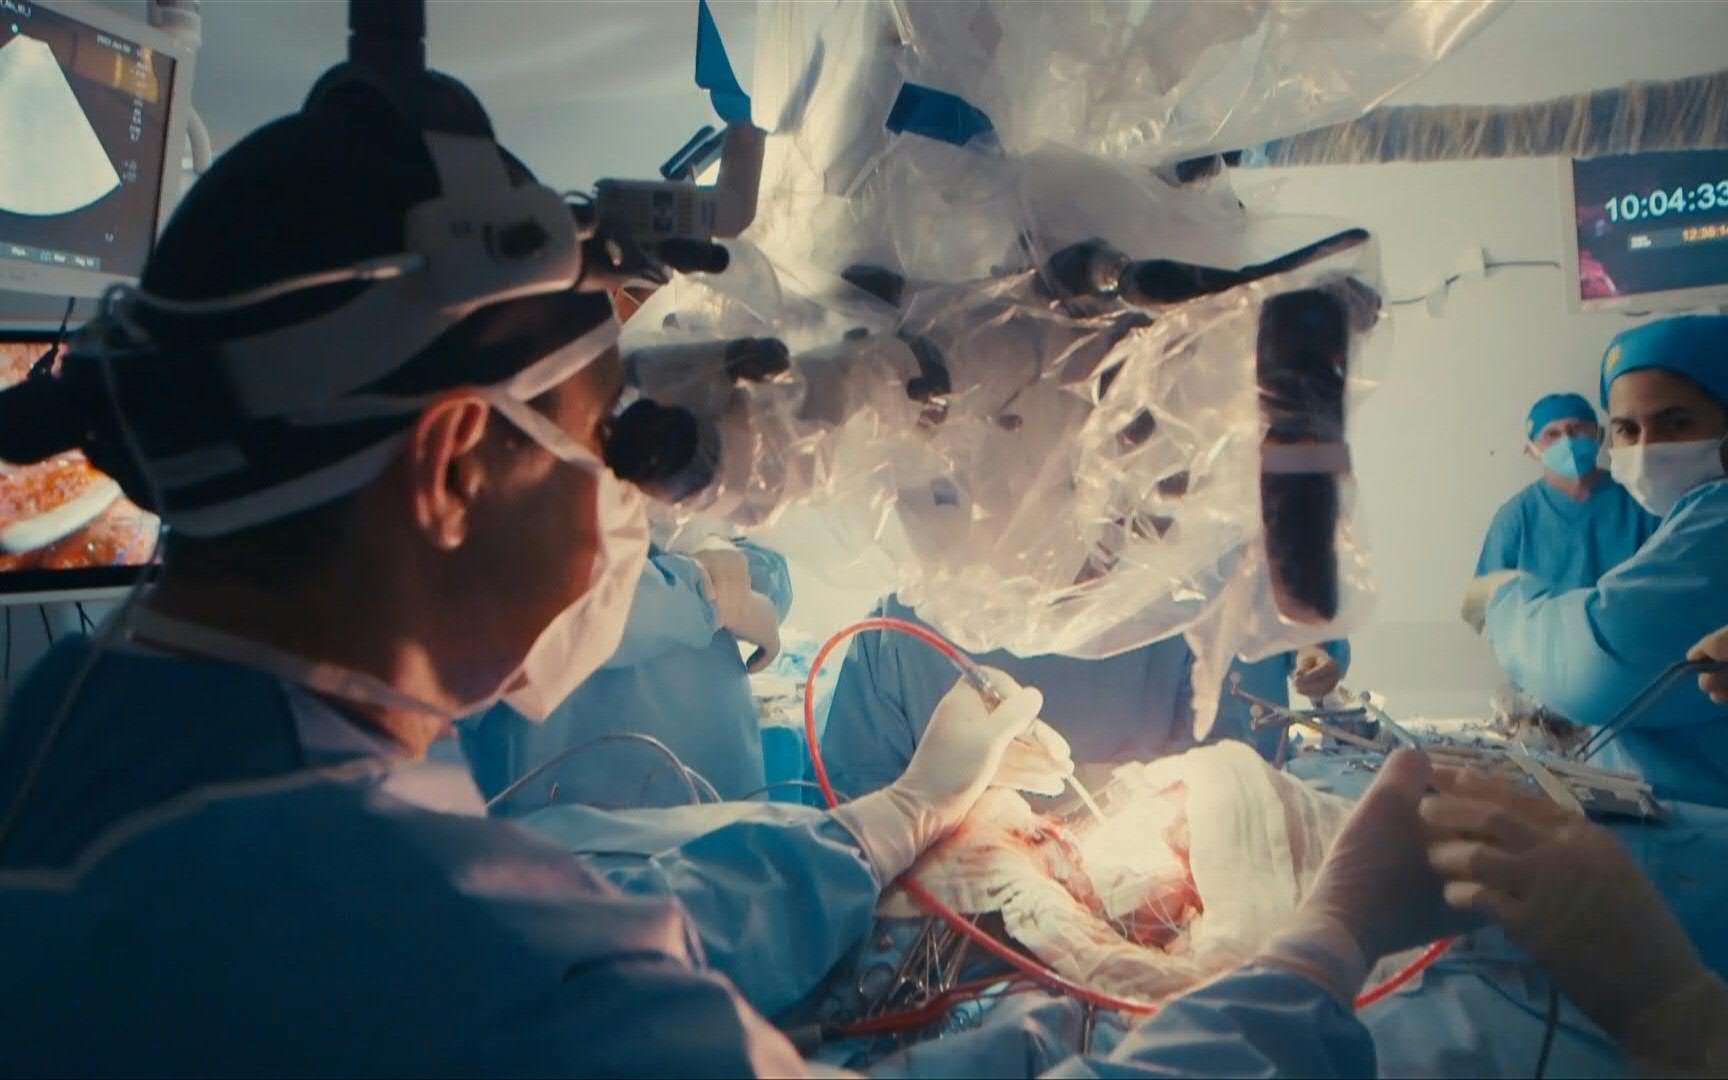 Cirurgia para separar gêmeos siameses aconteceu em sala com realidade virtual